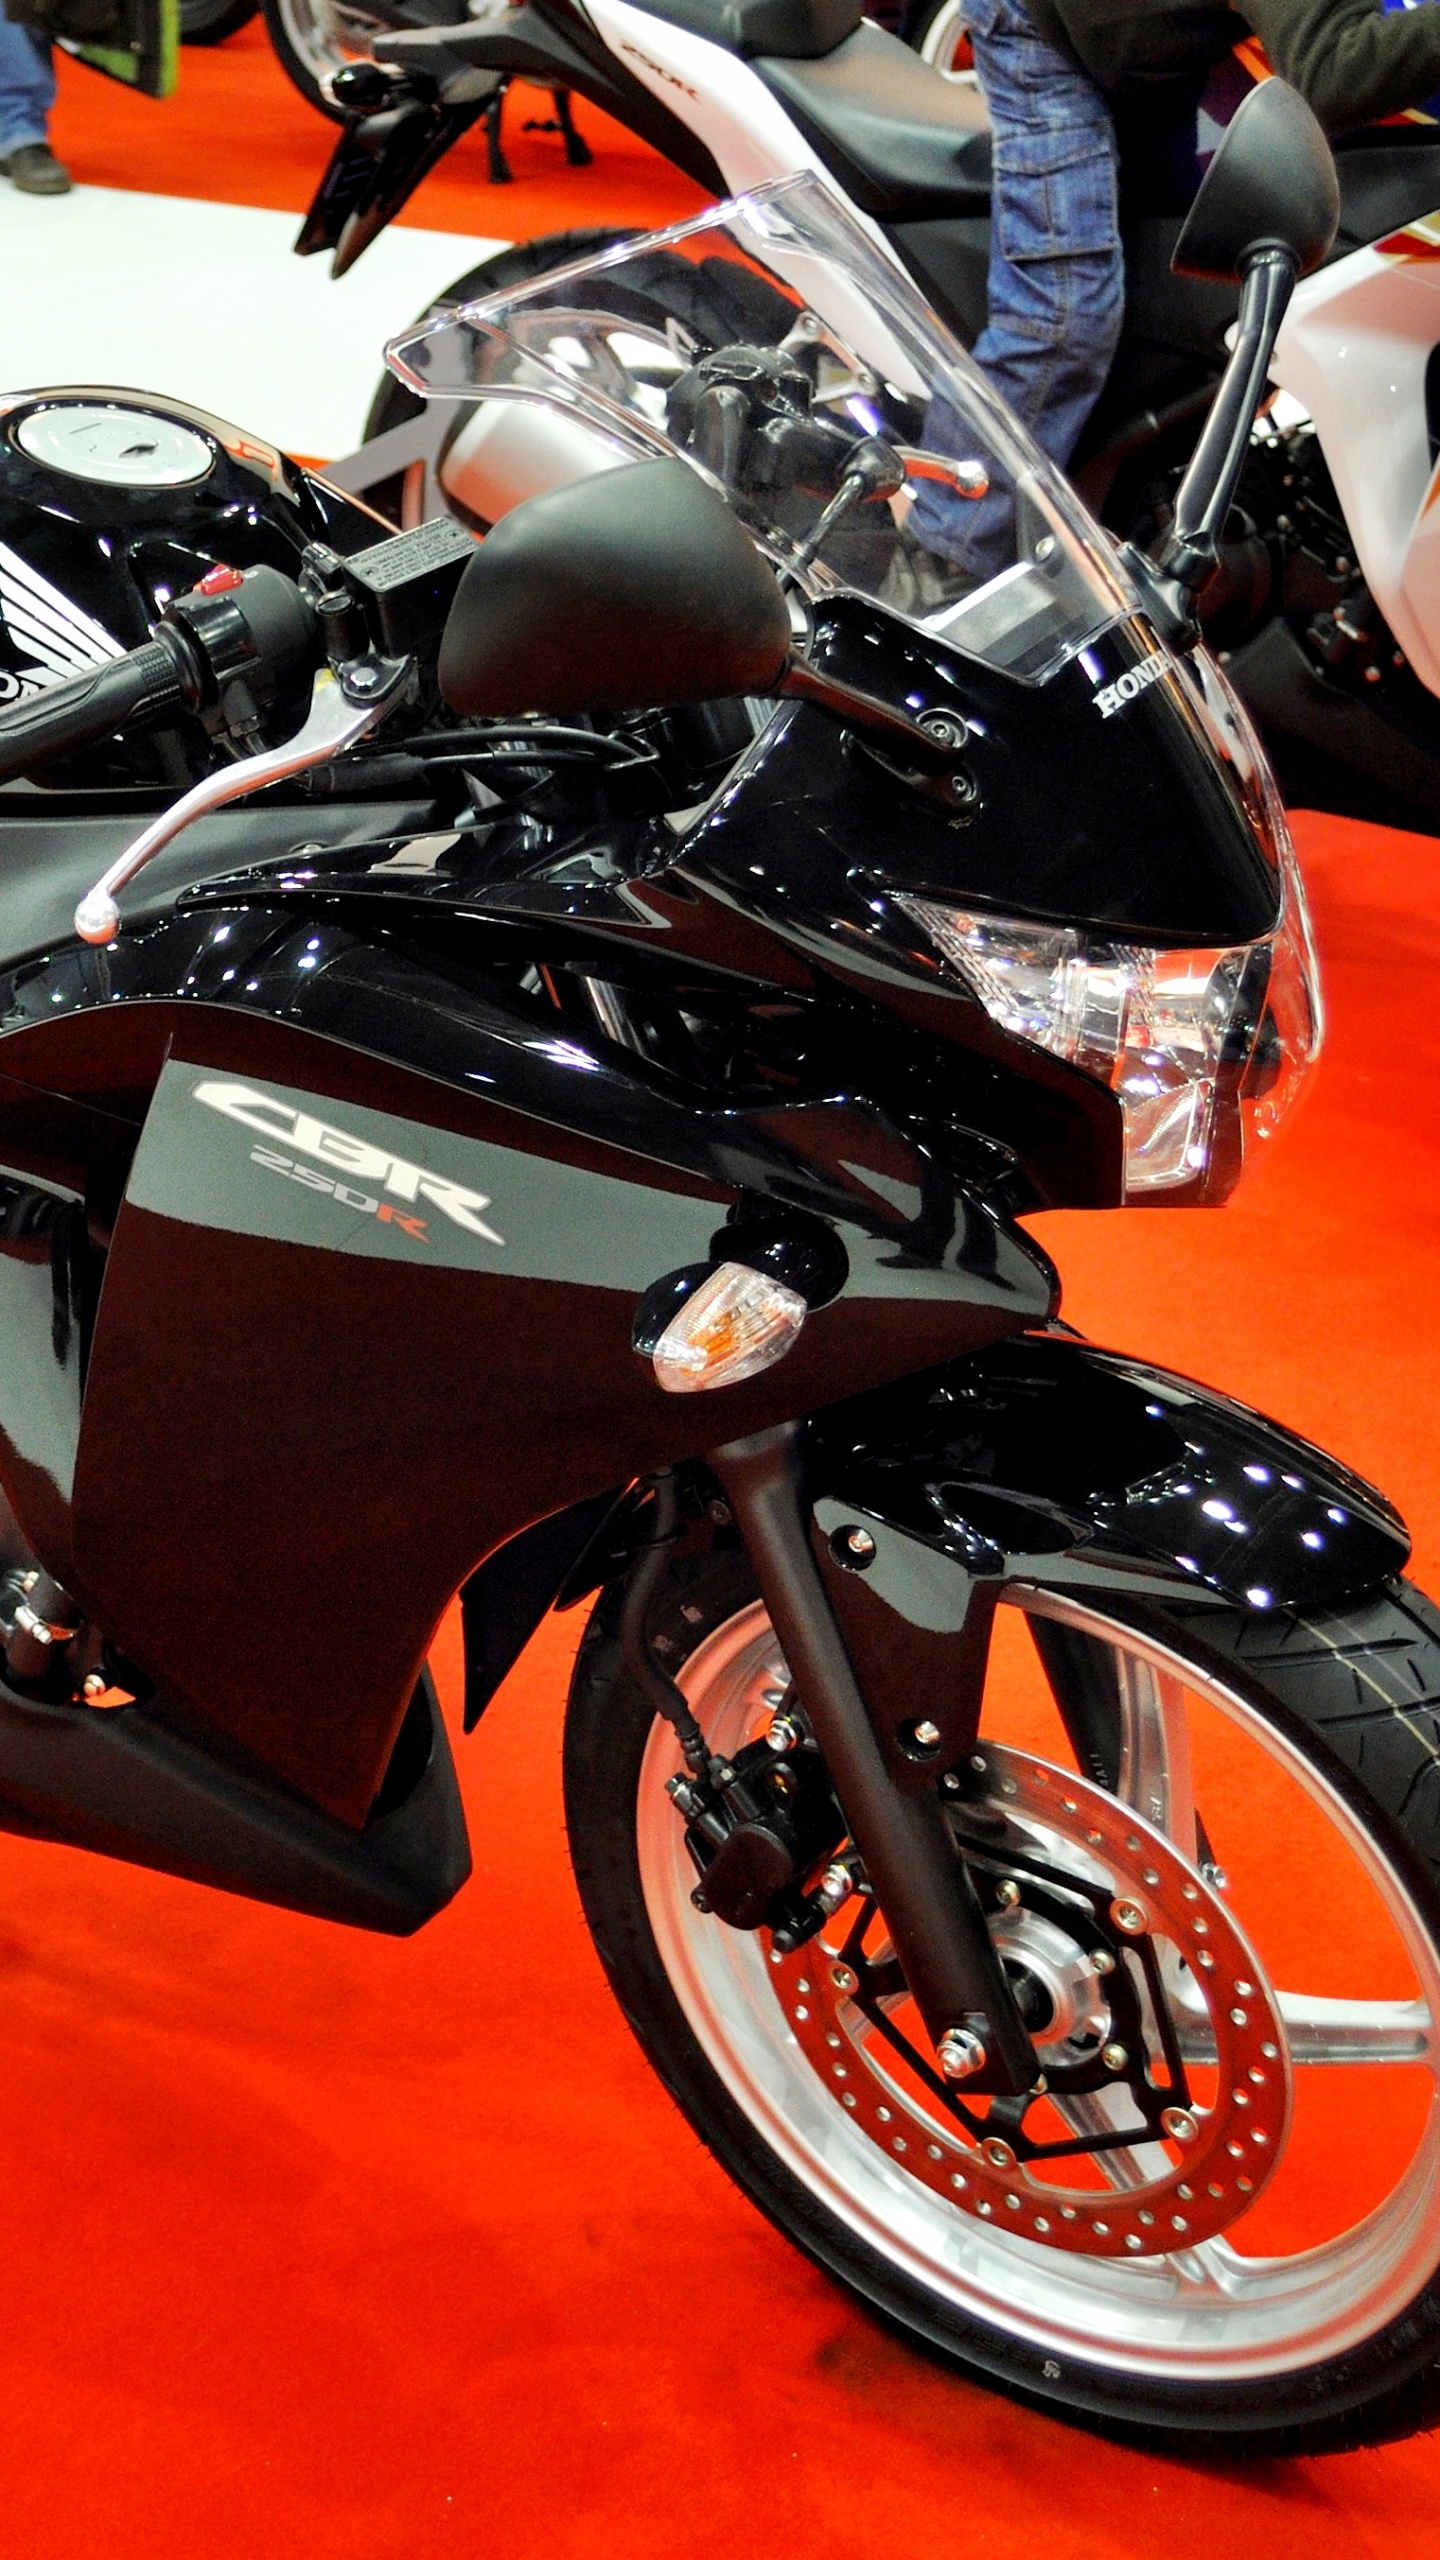 本田汽车公司, 本田cbr250r, 自行车运动, 摩托车配件, 摩托车的纪念品 壁纸 1440x2560 允许